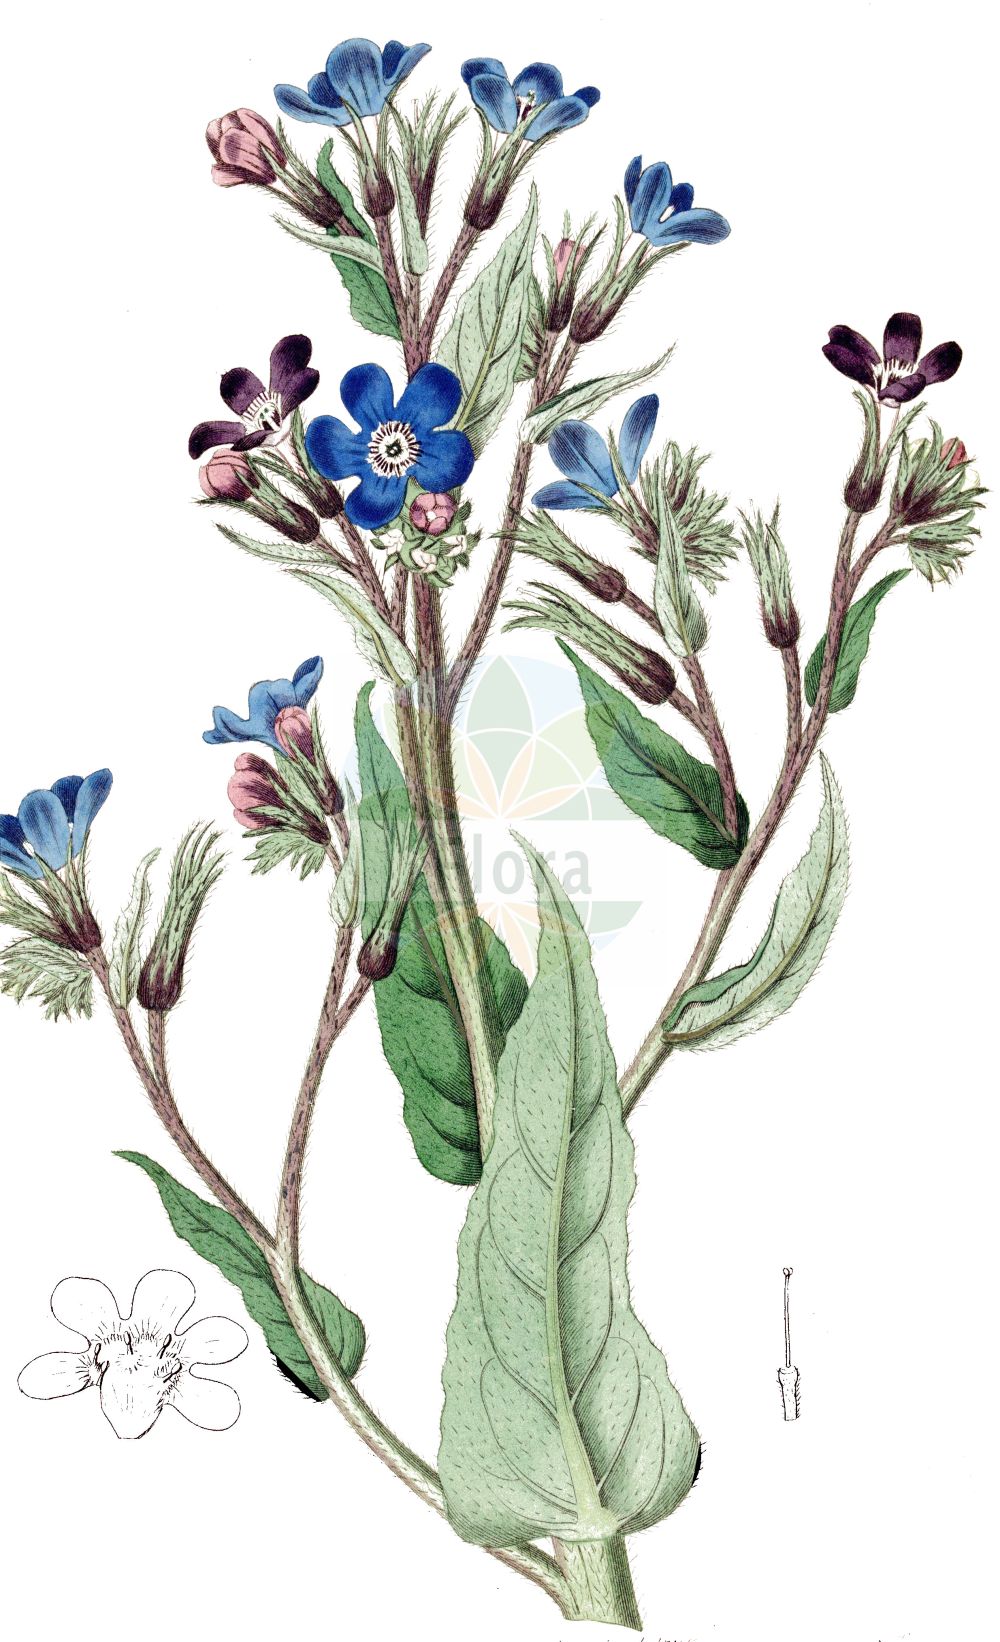 Historische Abbildung von Anchusa azurea (Italienische Ochsenzunge - Garden Anchusa). Das Bild zeigt Blatt, Bluete, Frucht und Same. ---- Historical Drawing of Anchusa azurea (Italienische Ochsenzunge - Garden Anchusa). The image is showing leaf, flower, fruit and seed.(Anchusa azurea,Italienische Ochsenzunge,Garden Anchusa,Anchusa azurea,Anchusa biceps,Anchusa italica,Anchusa macrocarpa,Anchusa macrophylla,Anchusa paniculata,Buglossum italicum,Buglossum vulgare,Italienische Ochsenzunge,Garden Anchusa,Italian Alkanet,Italian Bugloss,Large Blue Alkanet,Anchusa,Ochsenzunge,Bugloss,Boraginaceae,Raublattgewächse,Forget-me-Not family,Blatt,Bluete,Frucht,Same,leaf,flower,fruit,seed,Botanical Register (1815-1828))